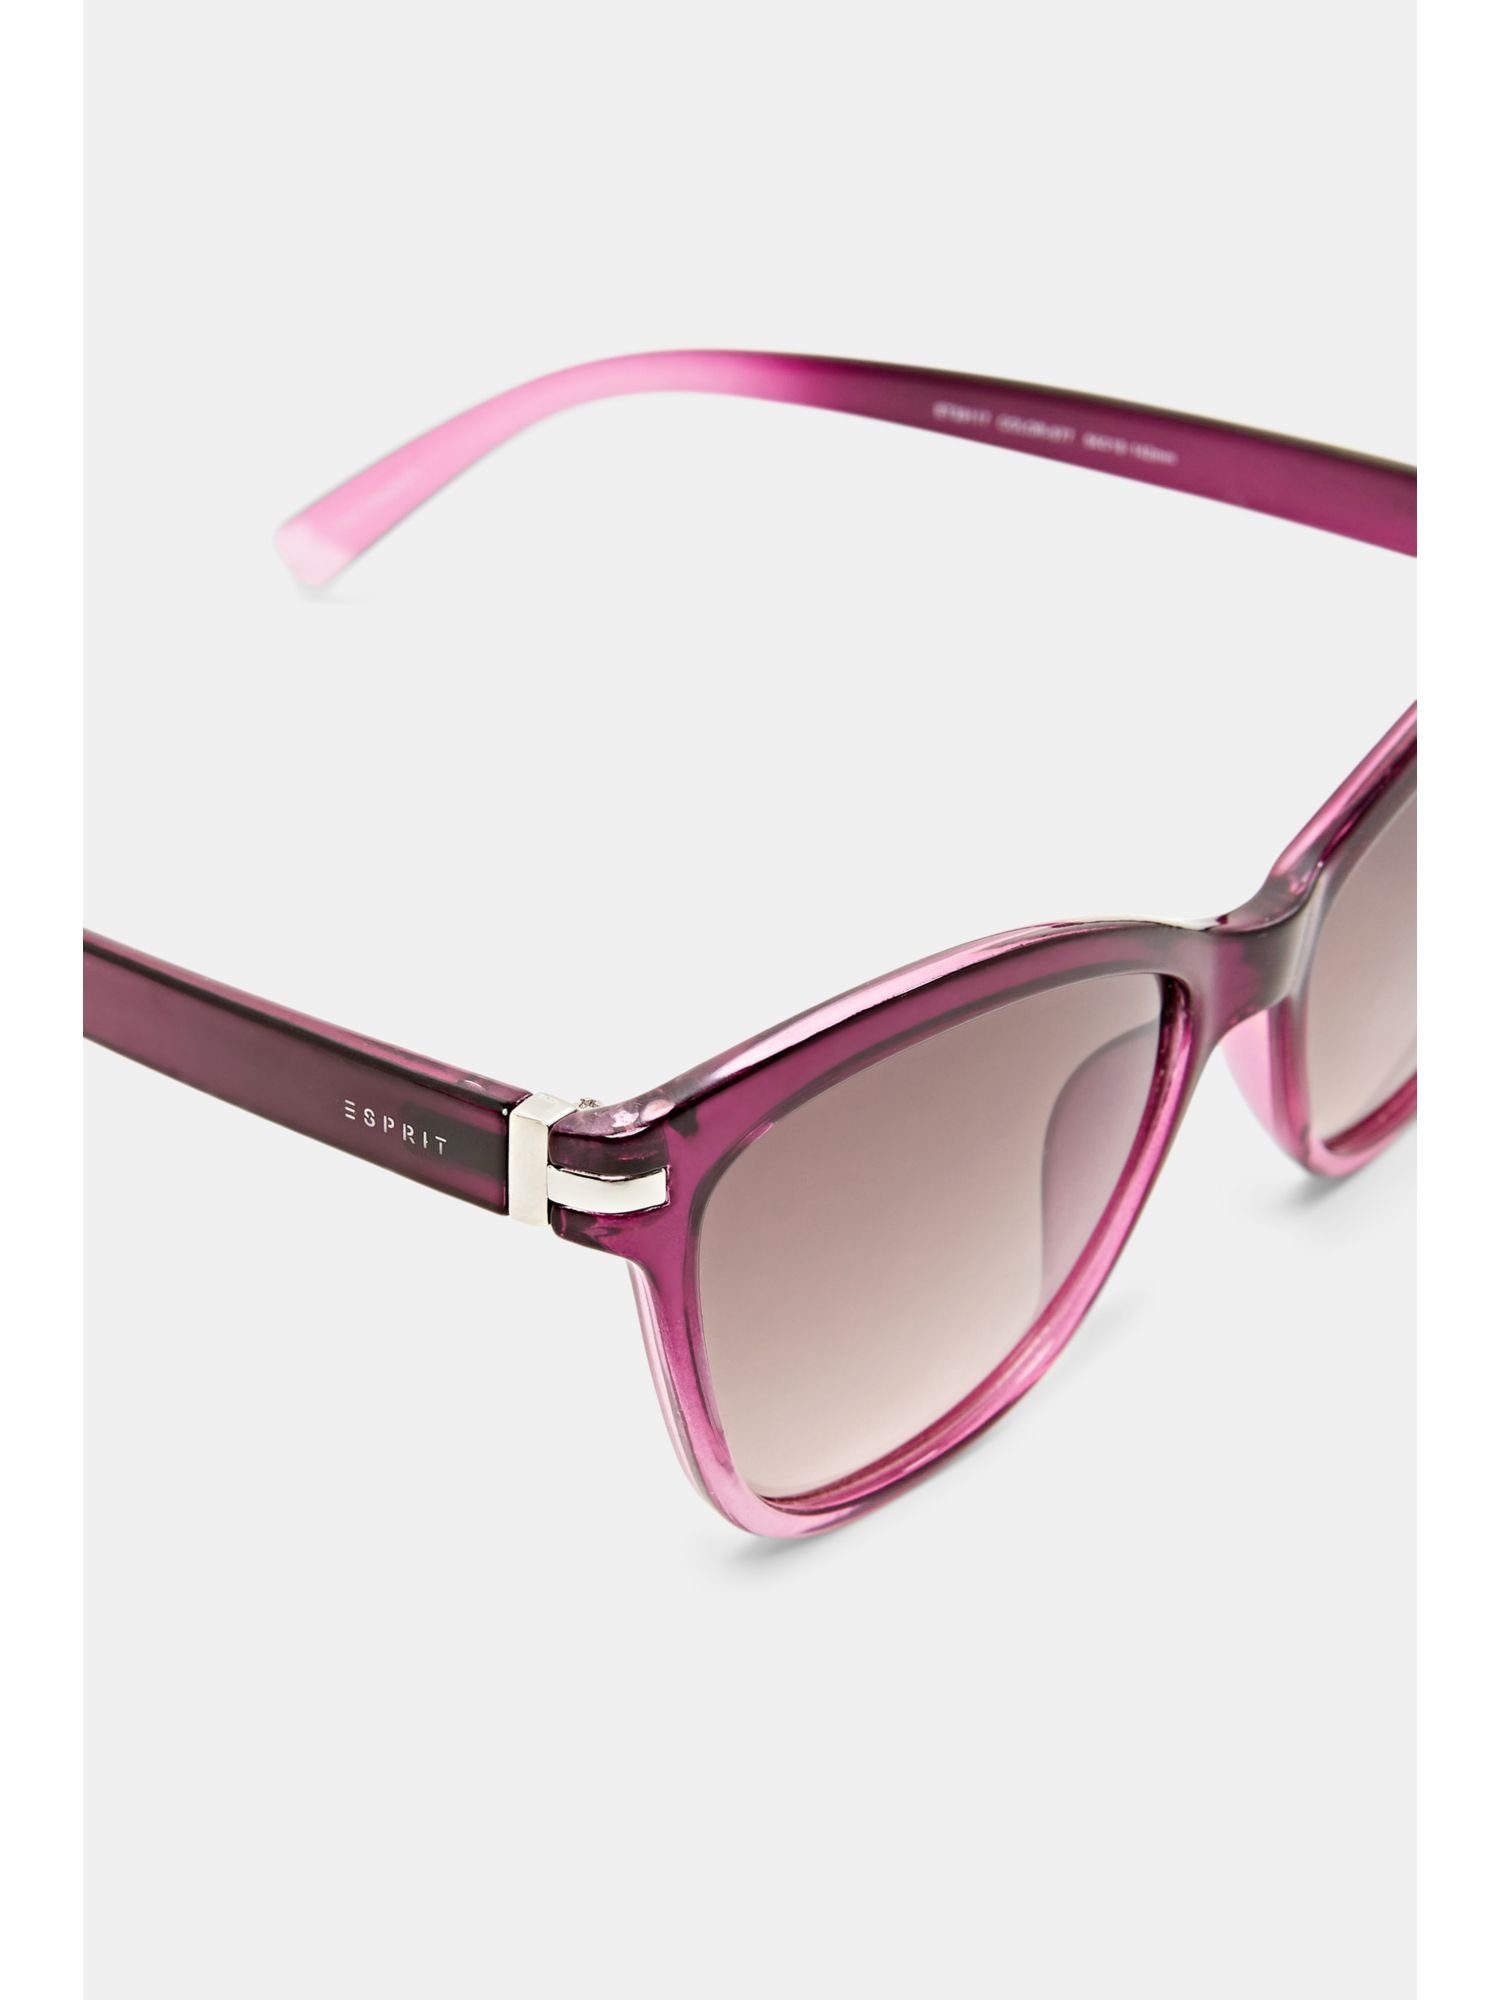 Esprit Sonnenbrille Cateye-Sonnenbrille mit Farbverlauf PURPLE